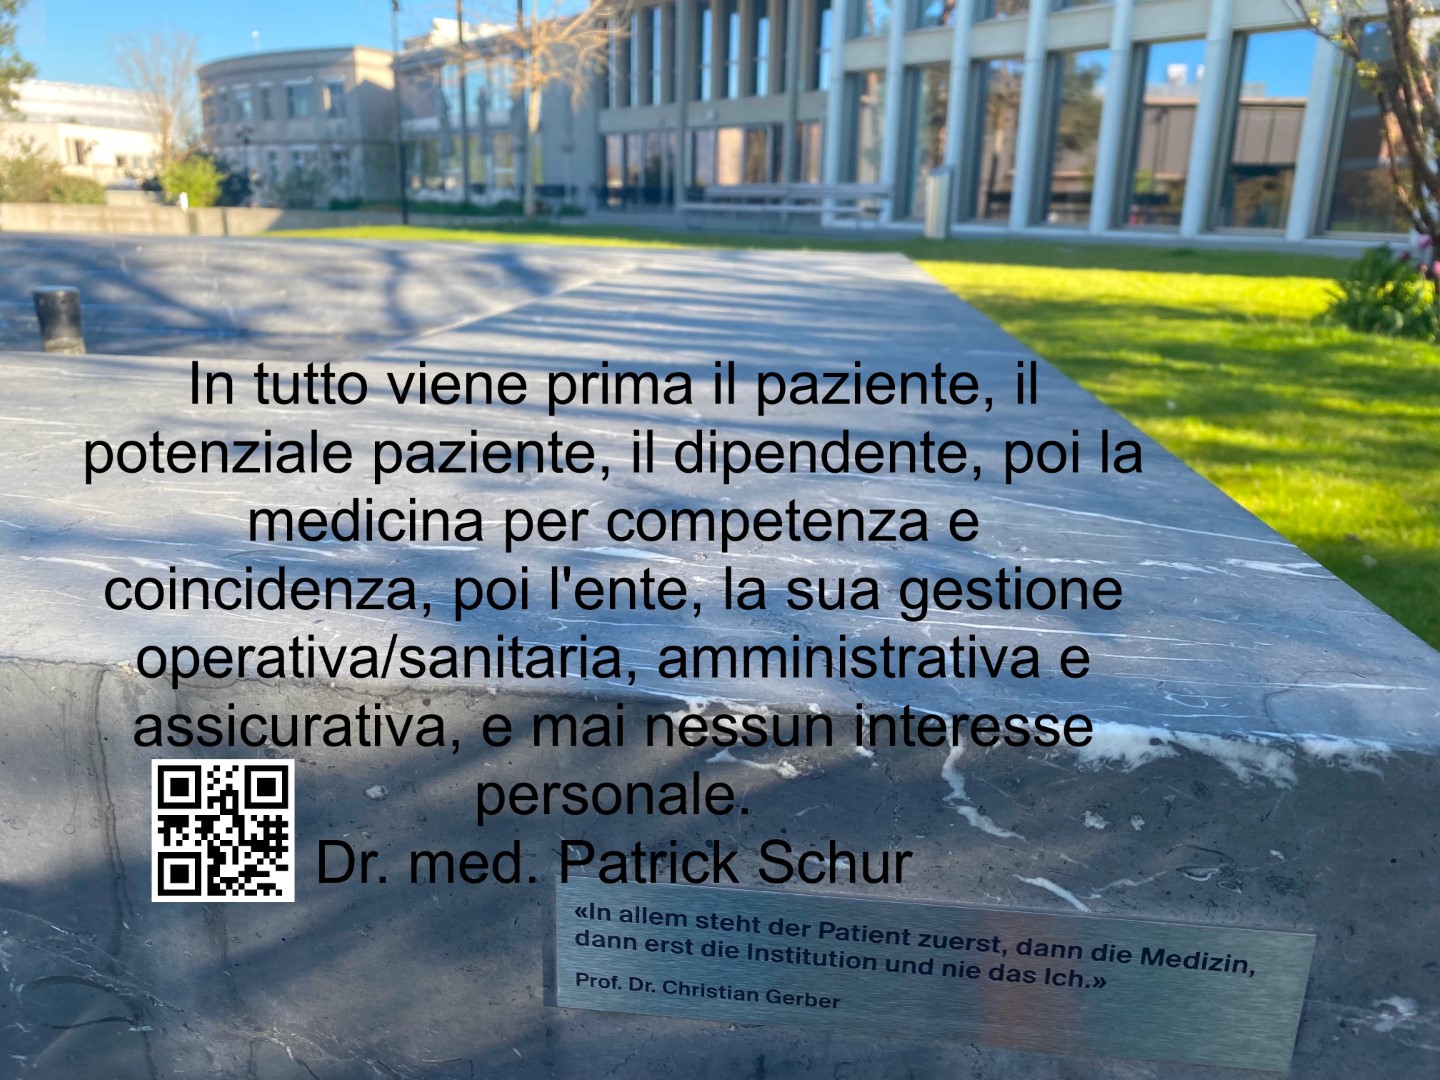 Ideologia etica (digitale) della catena di fornitura nel settore sanitario - a cura del Dr. med. Patrick Schur.ch